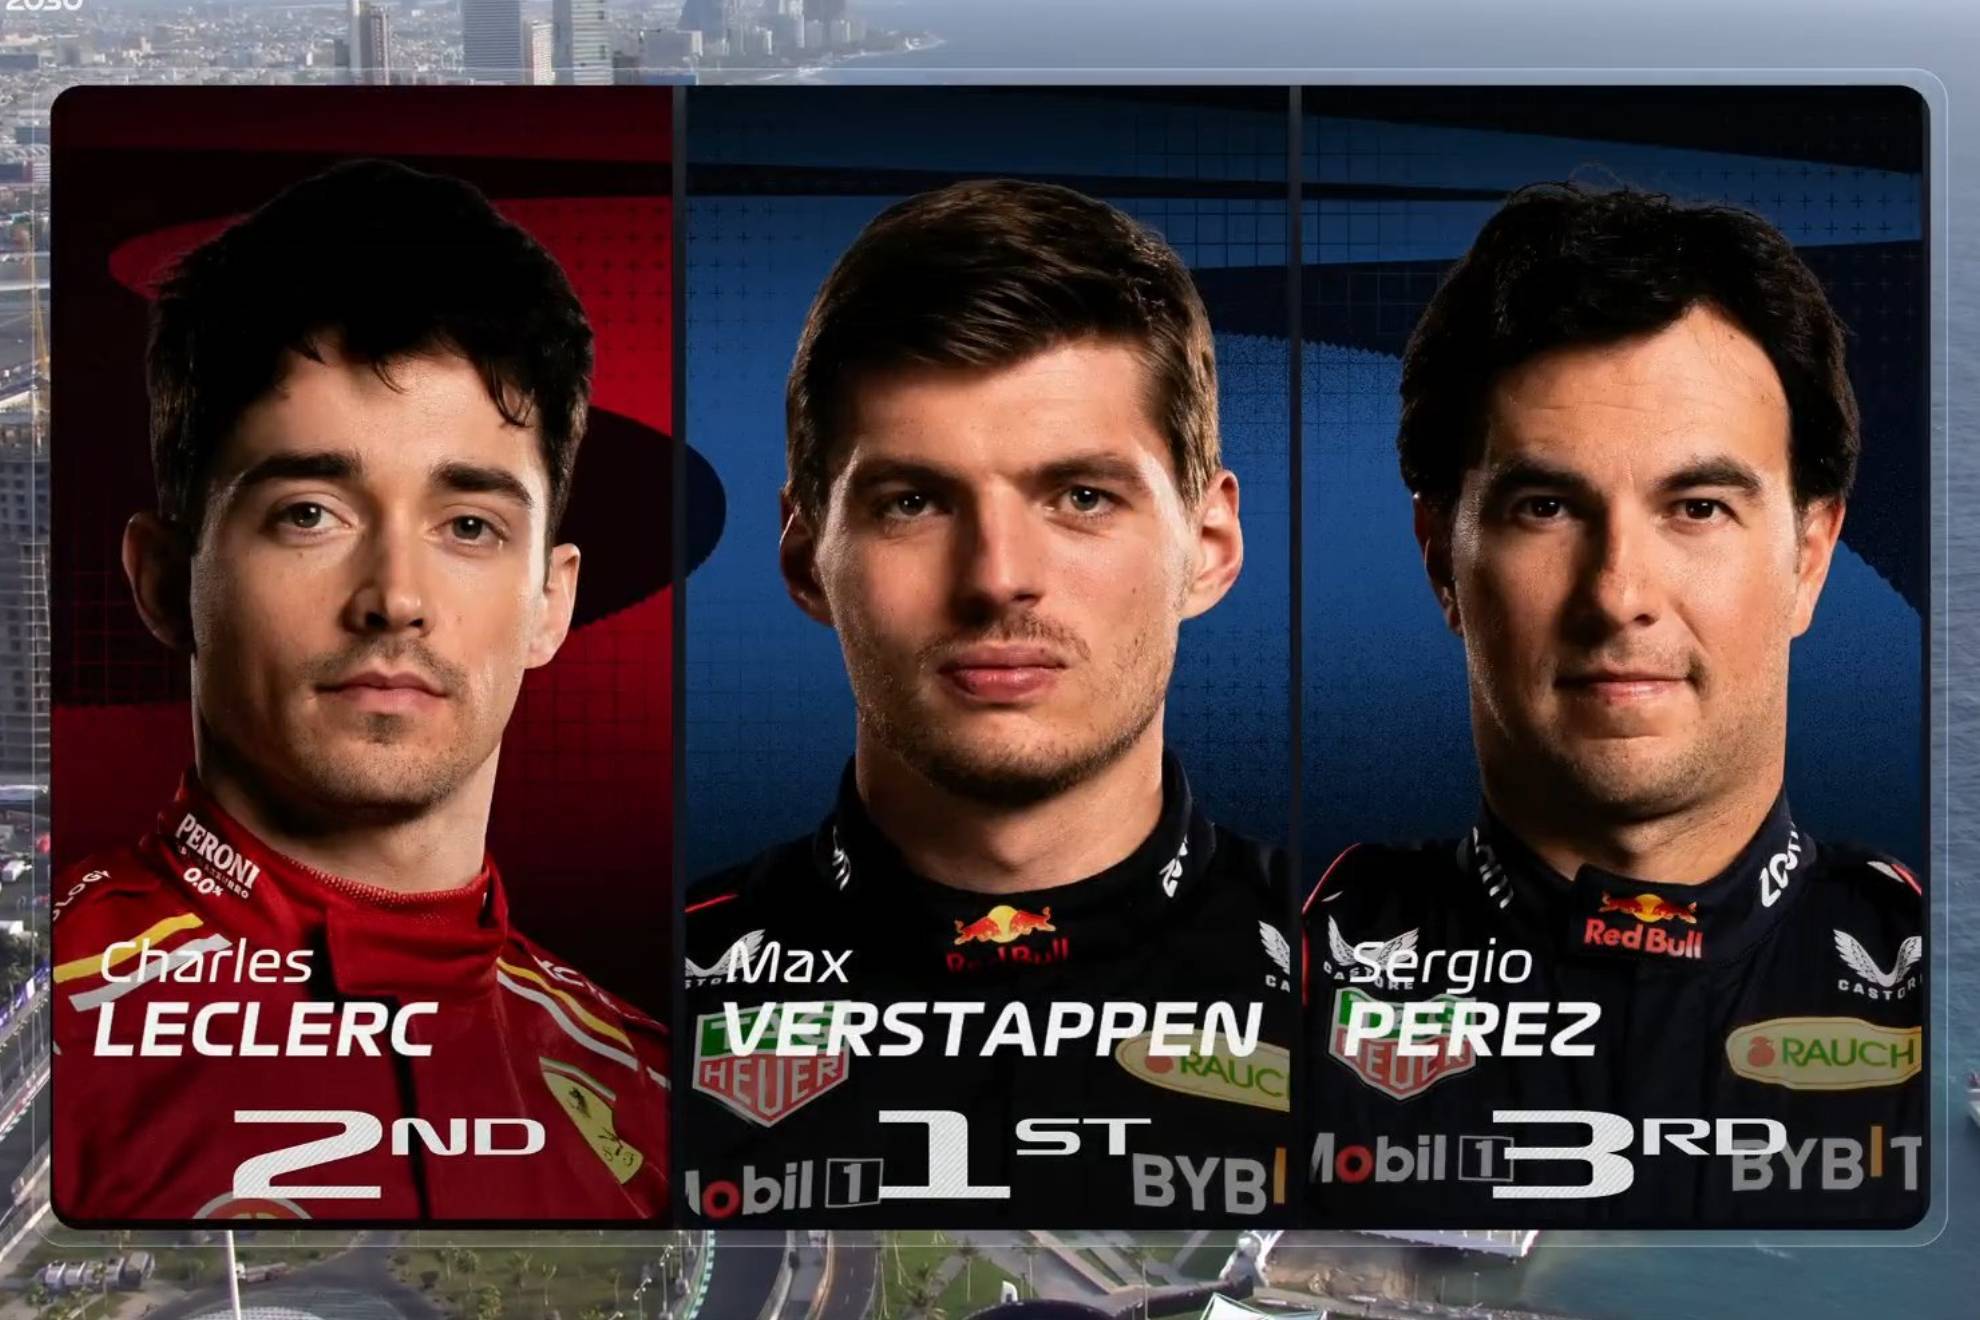 Prctica 3 GP Arabia Saudita F1: Resultados y posiciones, Leclerc se mete entre Checo Prez y Verstappen